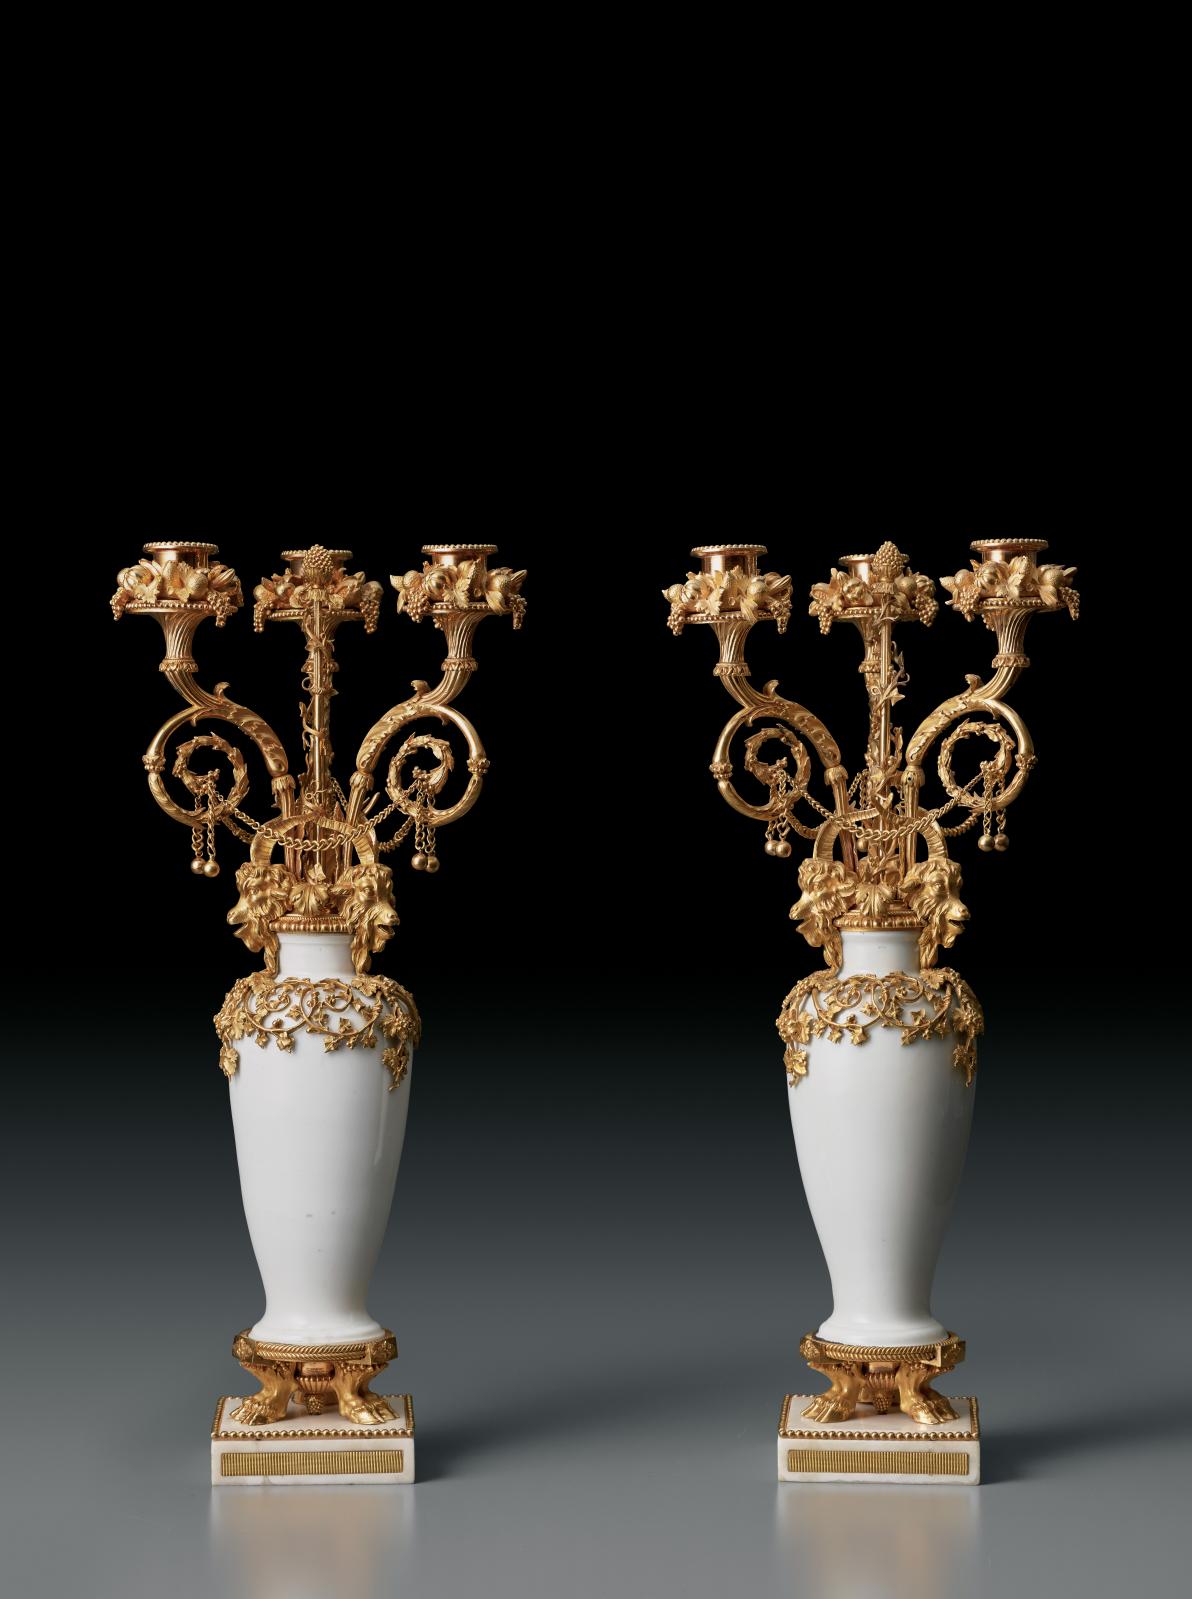 Paire de girandoles, un vase de porcelaine dure, manufacture de Meissen, vers 1720, le second, un remplacement ultérieur, bronzes dorés par Pierre Gou